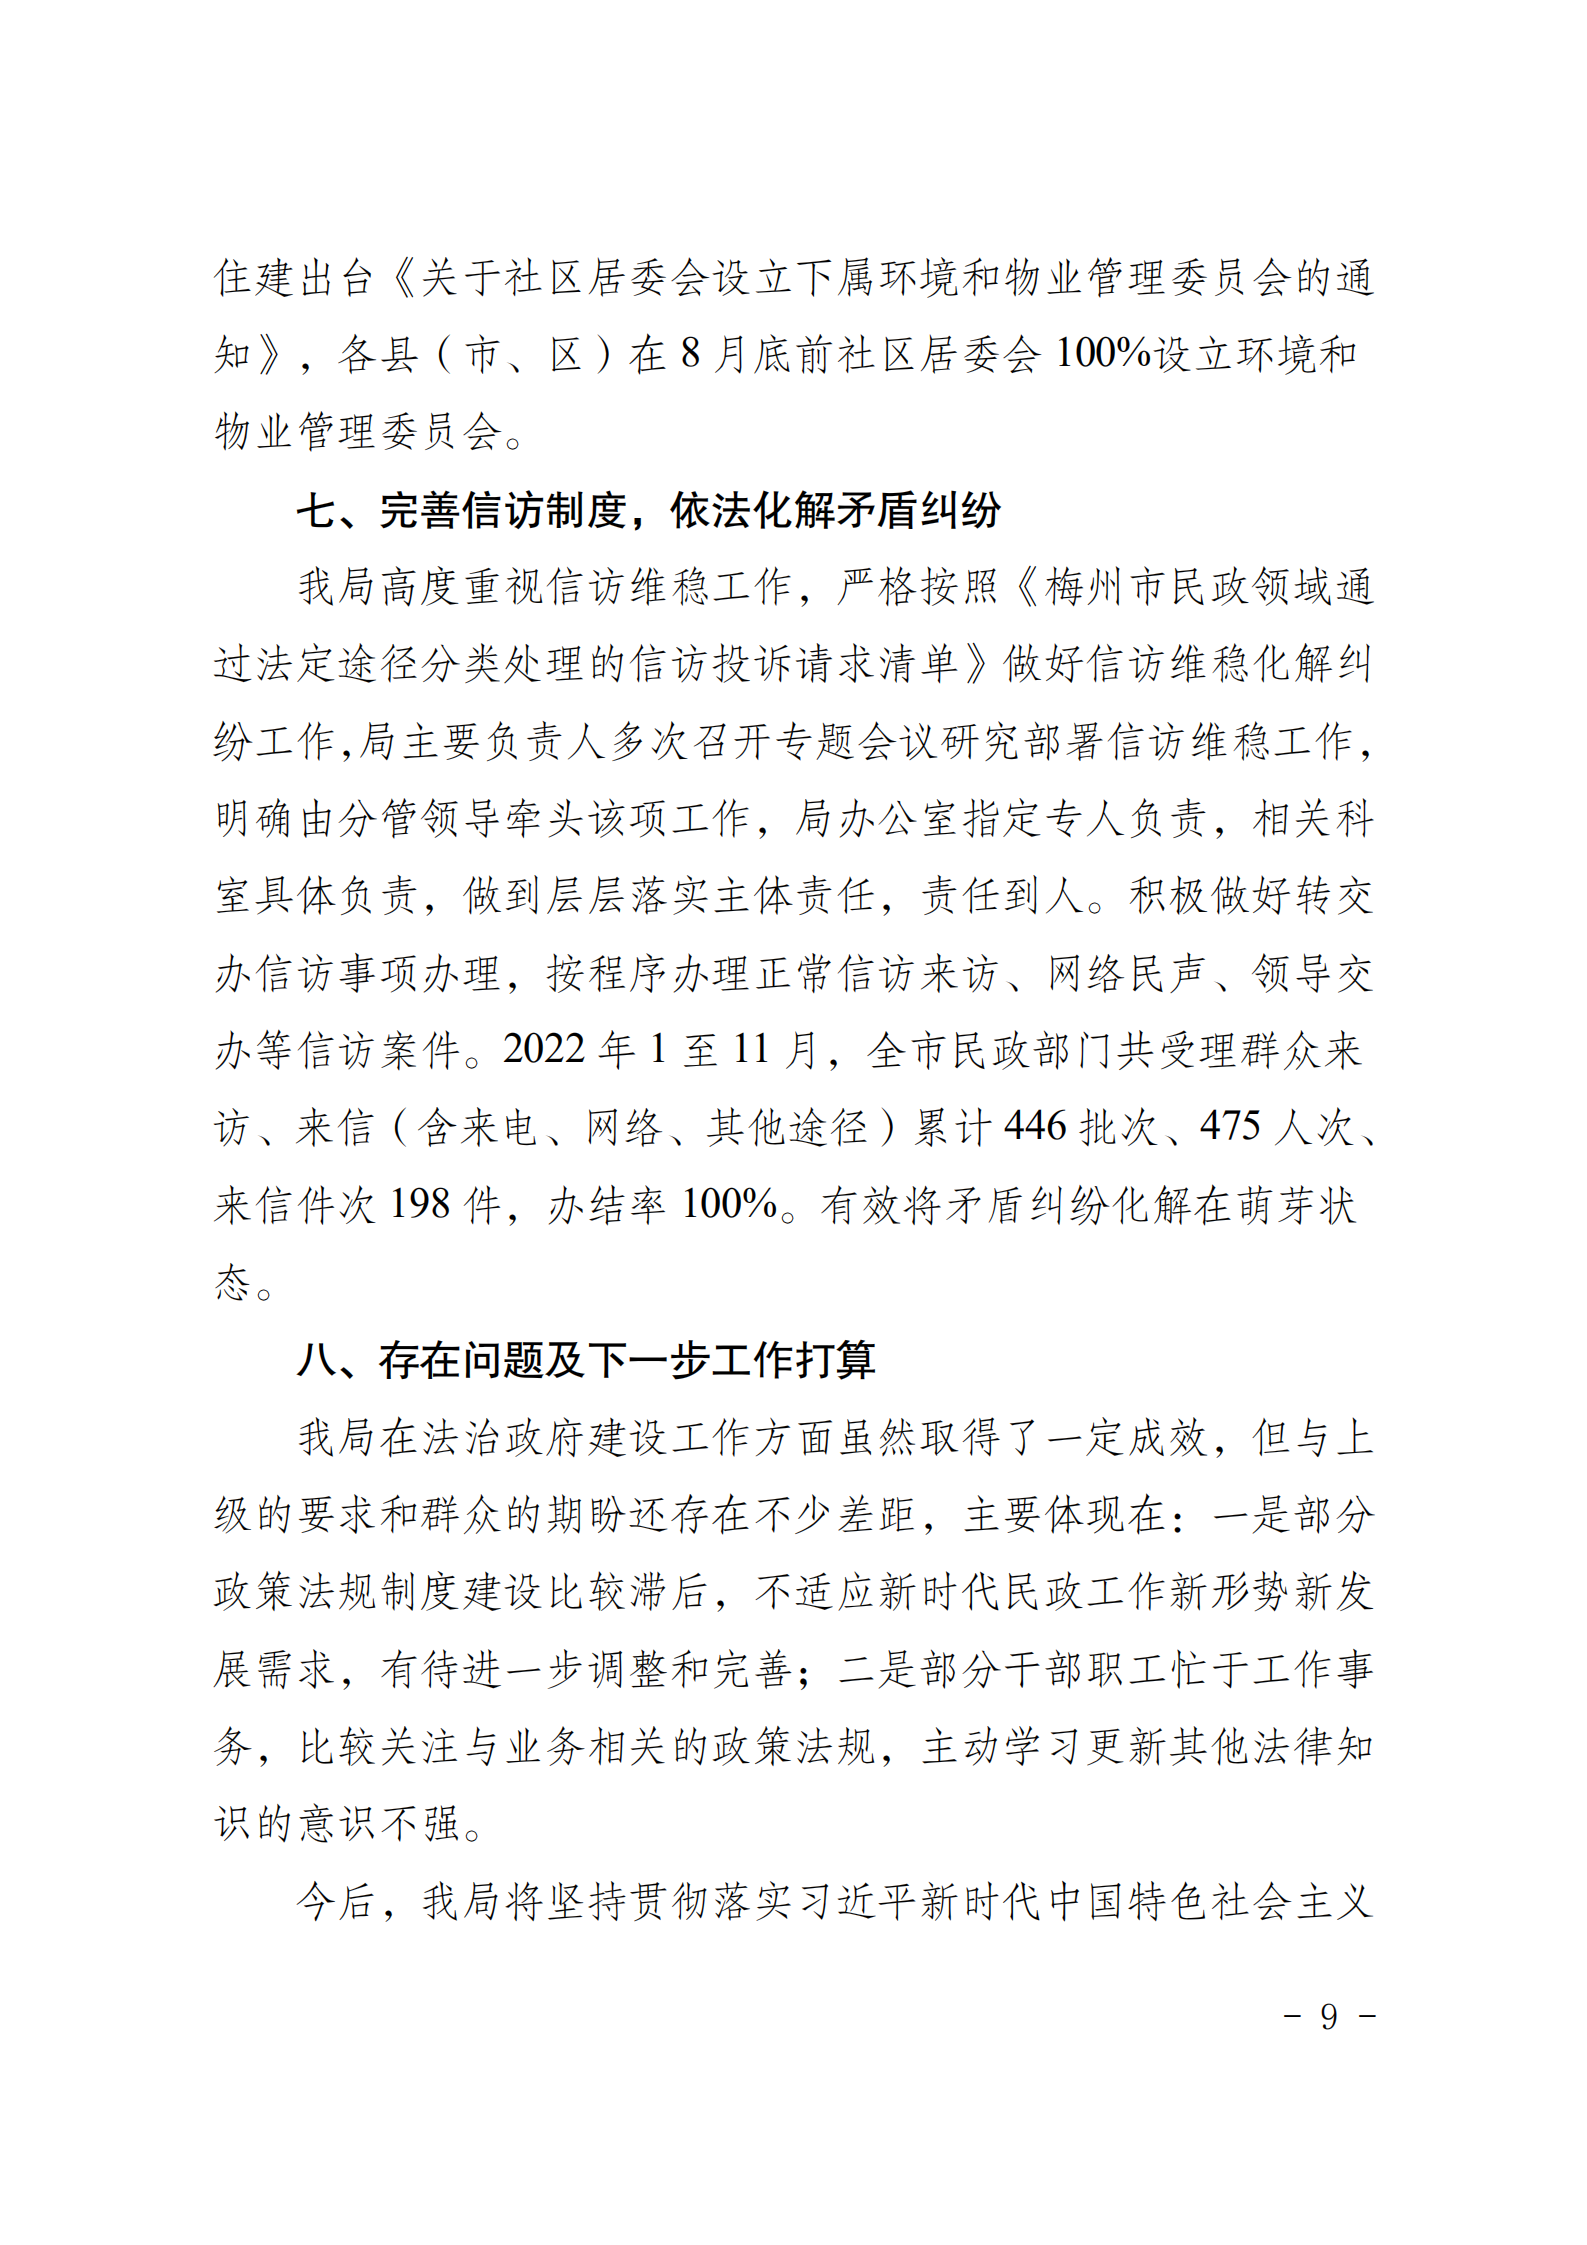 梅州市民政局关于2022年度法治政府建设情况的报告_08.png